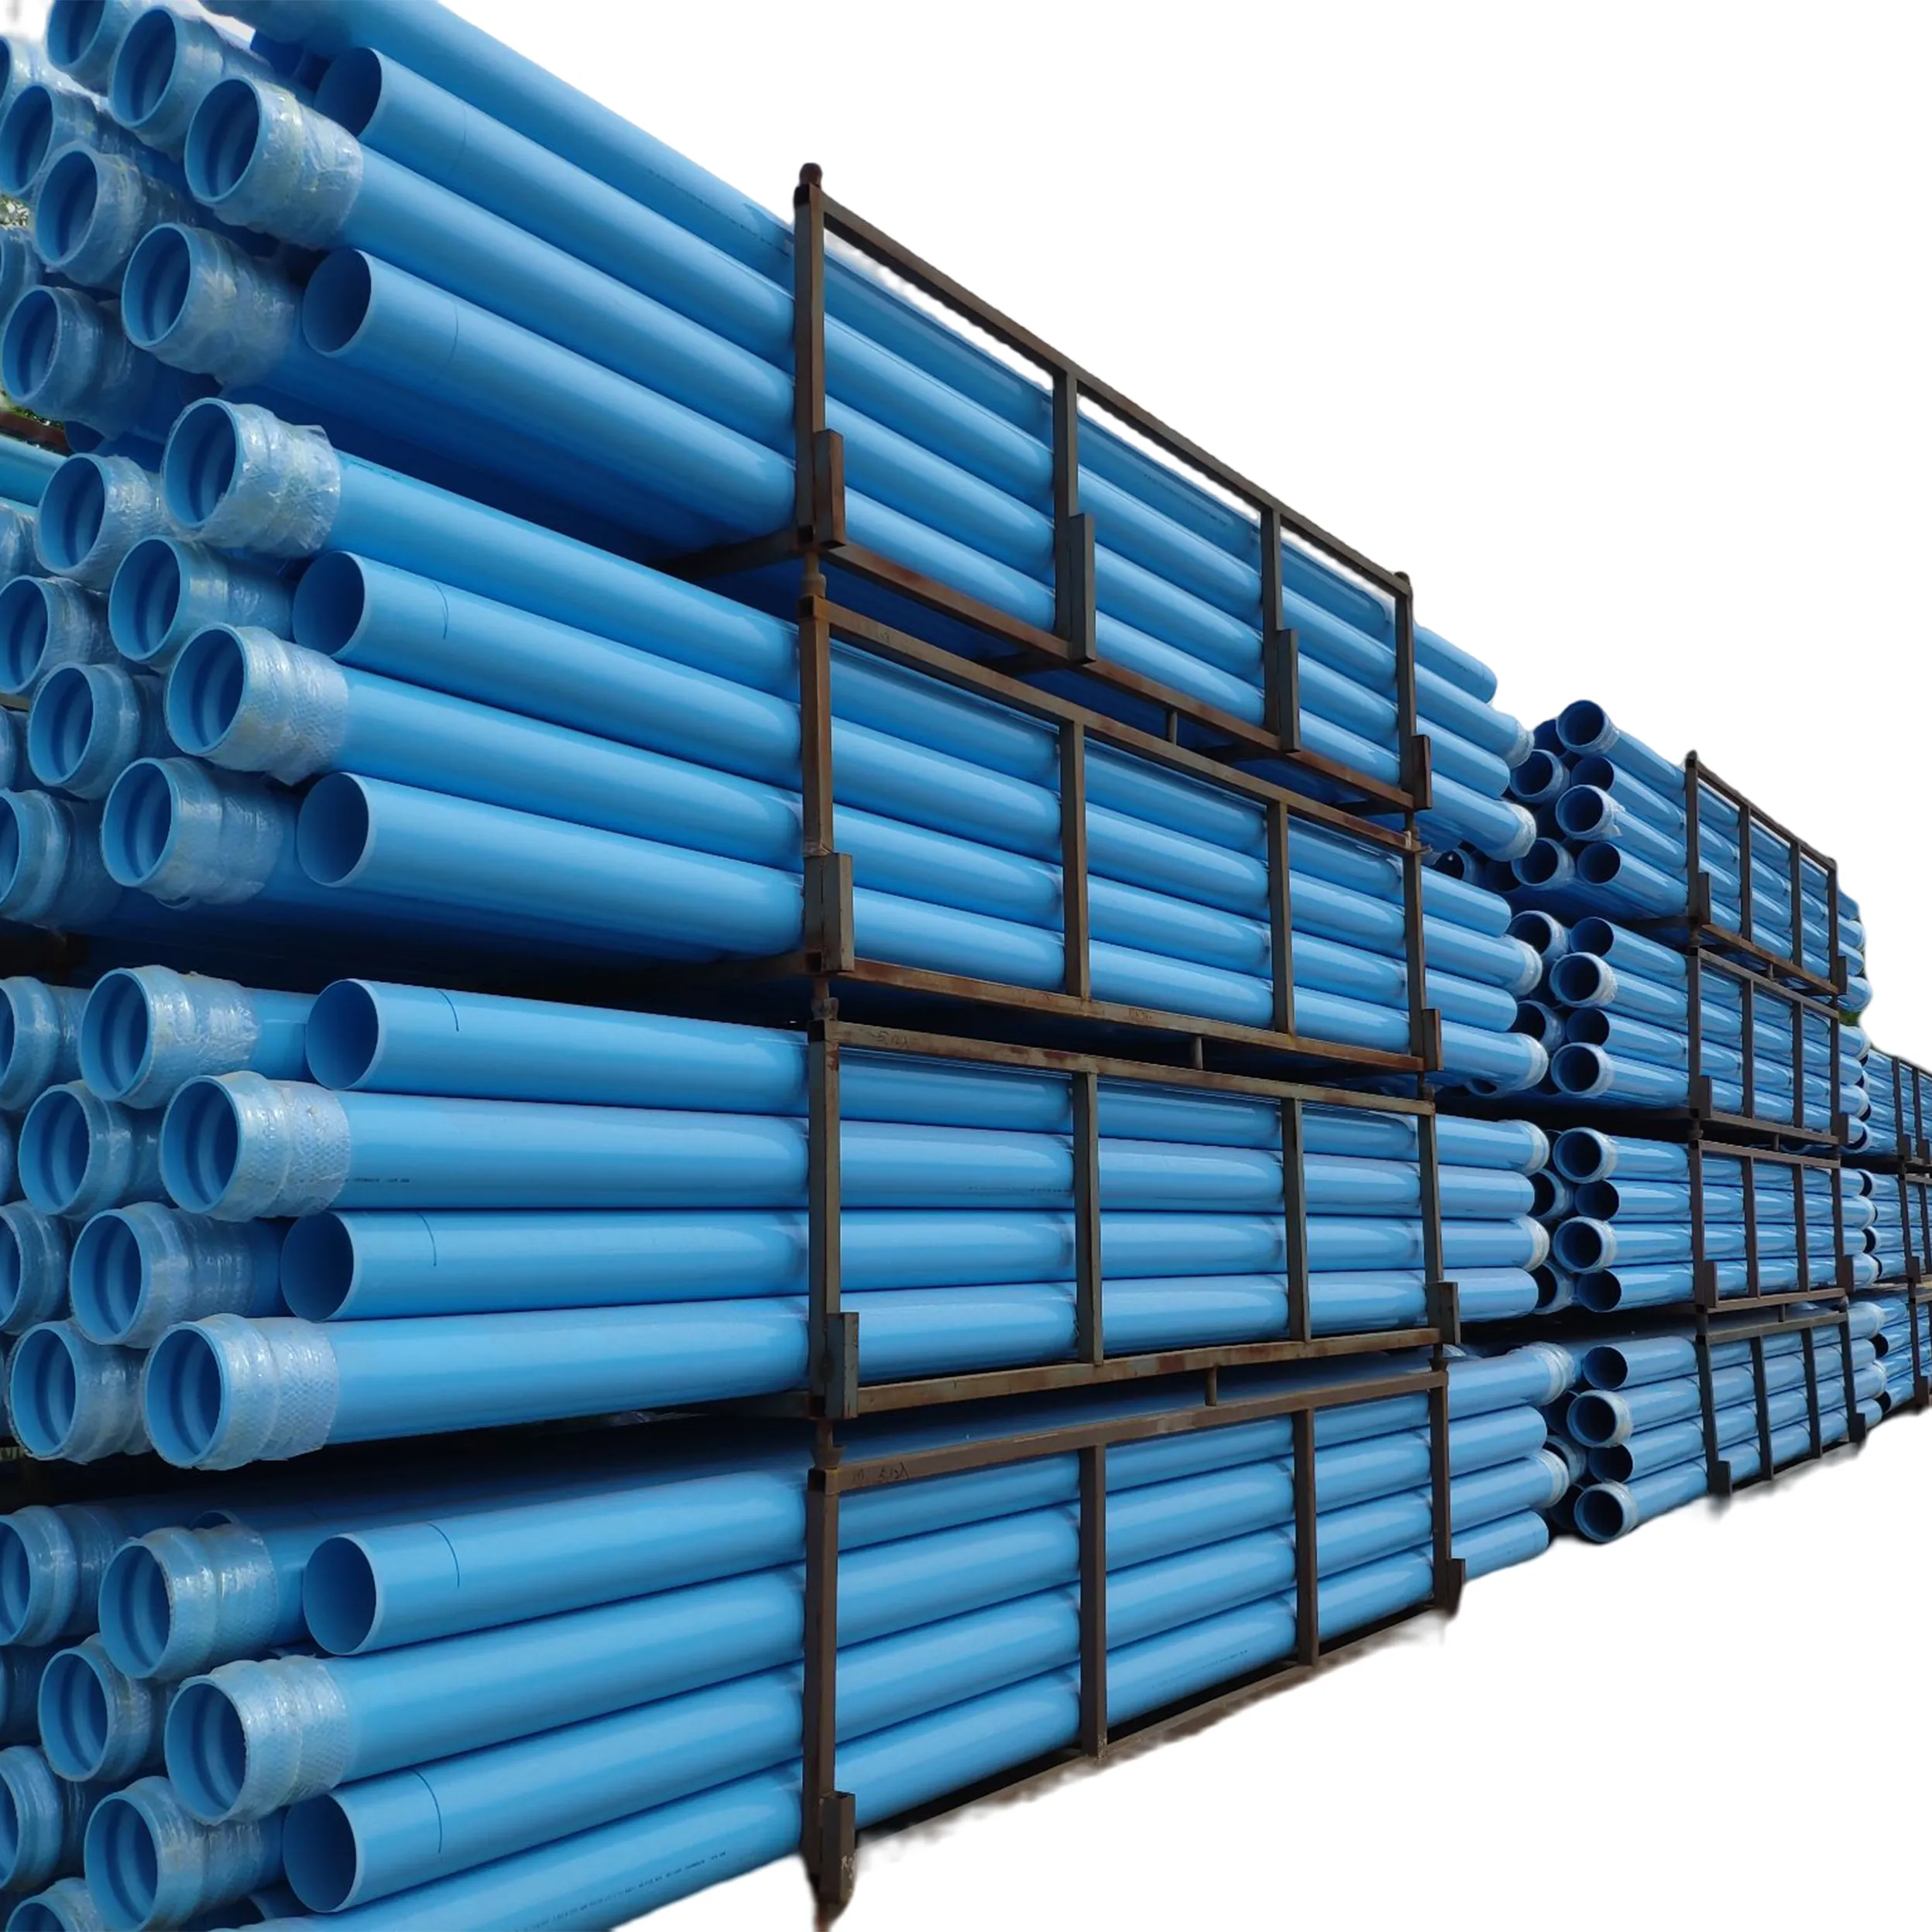 5 6 8 10 pollici di diametro il prezzo linea di tubi dell'acqua in pvc plastica 300mm 600mm dimensioni del tubo del tubo in pvc-o dell'acqua